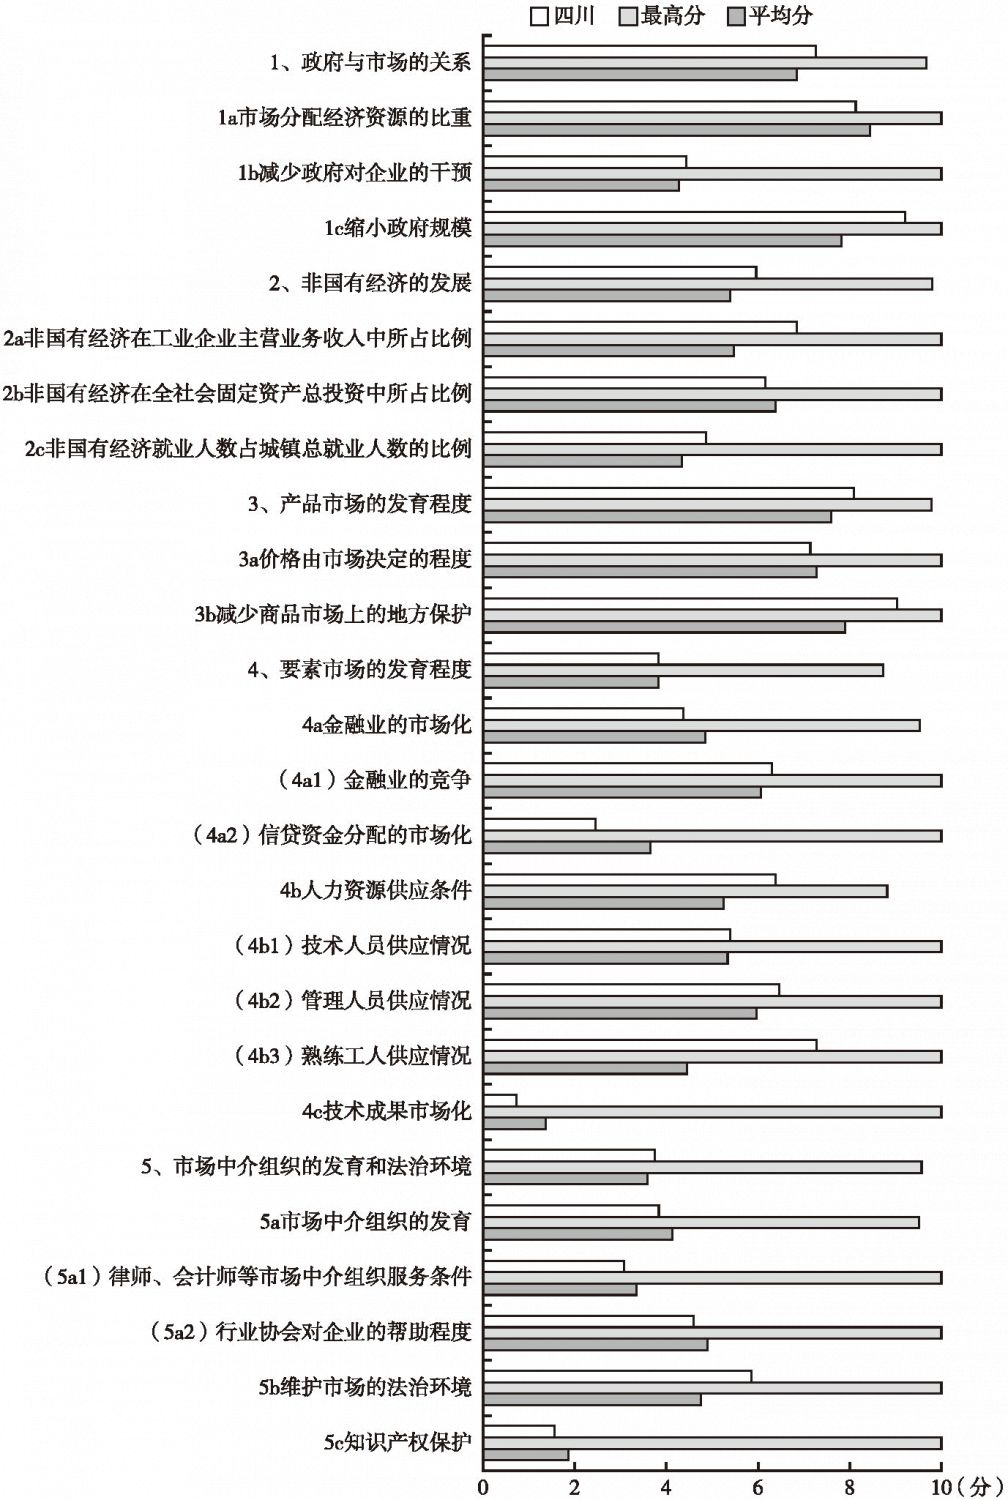 2008年四川市场化各方面指数和分项指数与全国最高分及平均分的比较